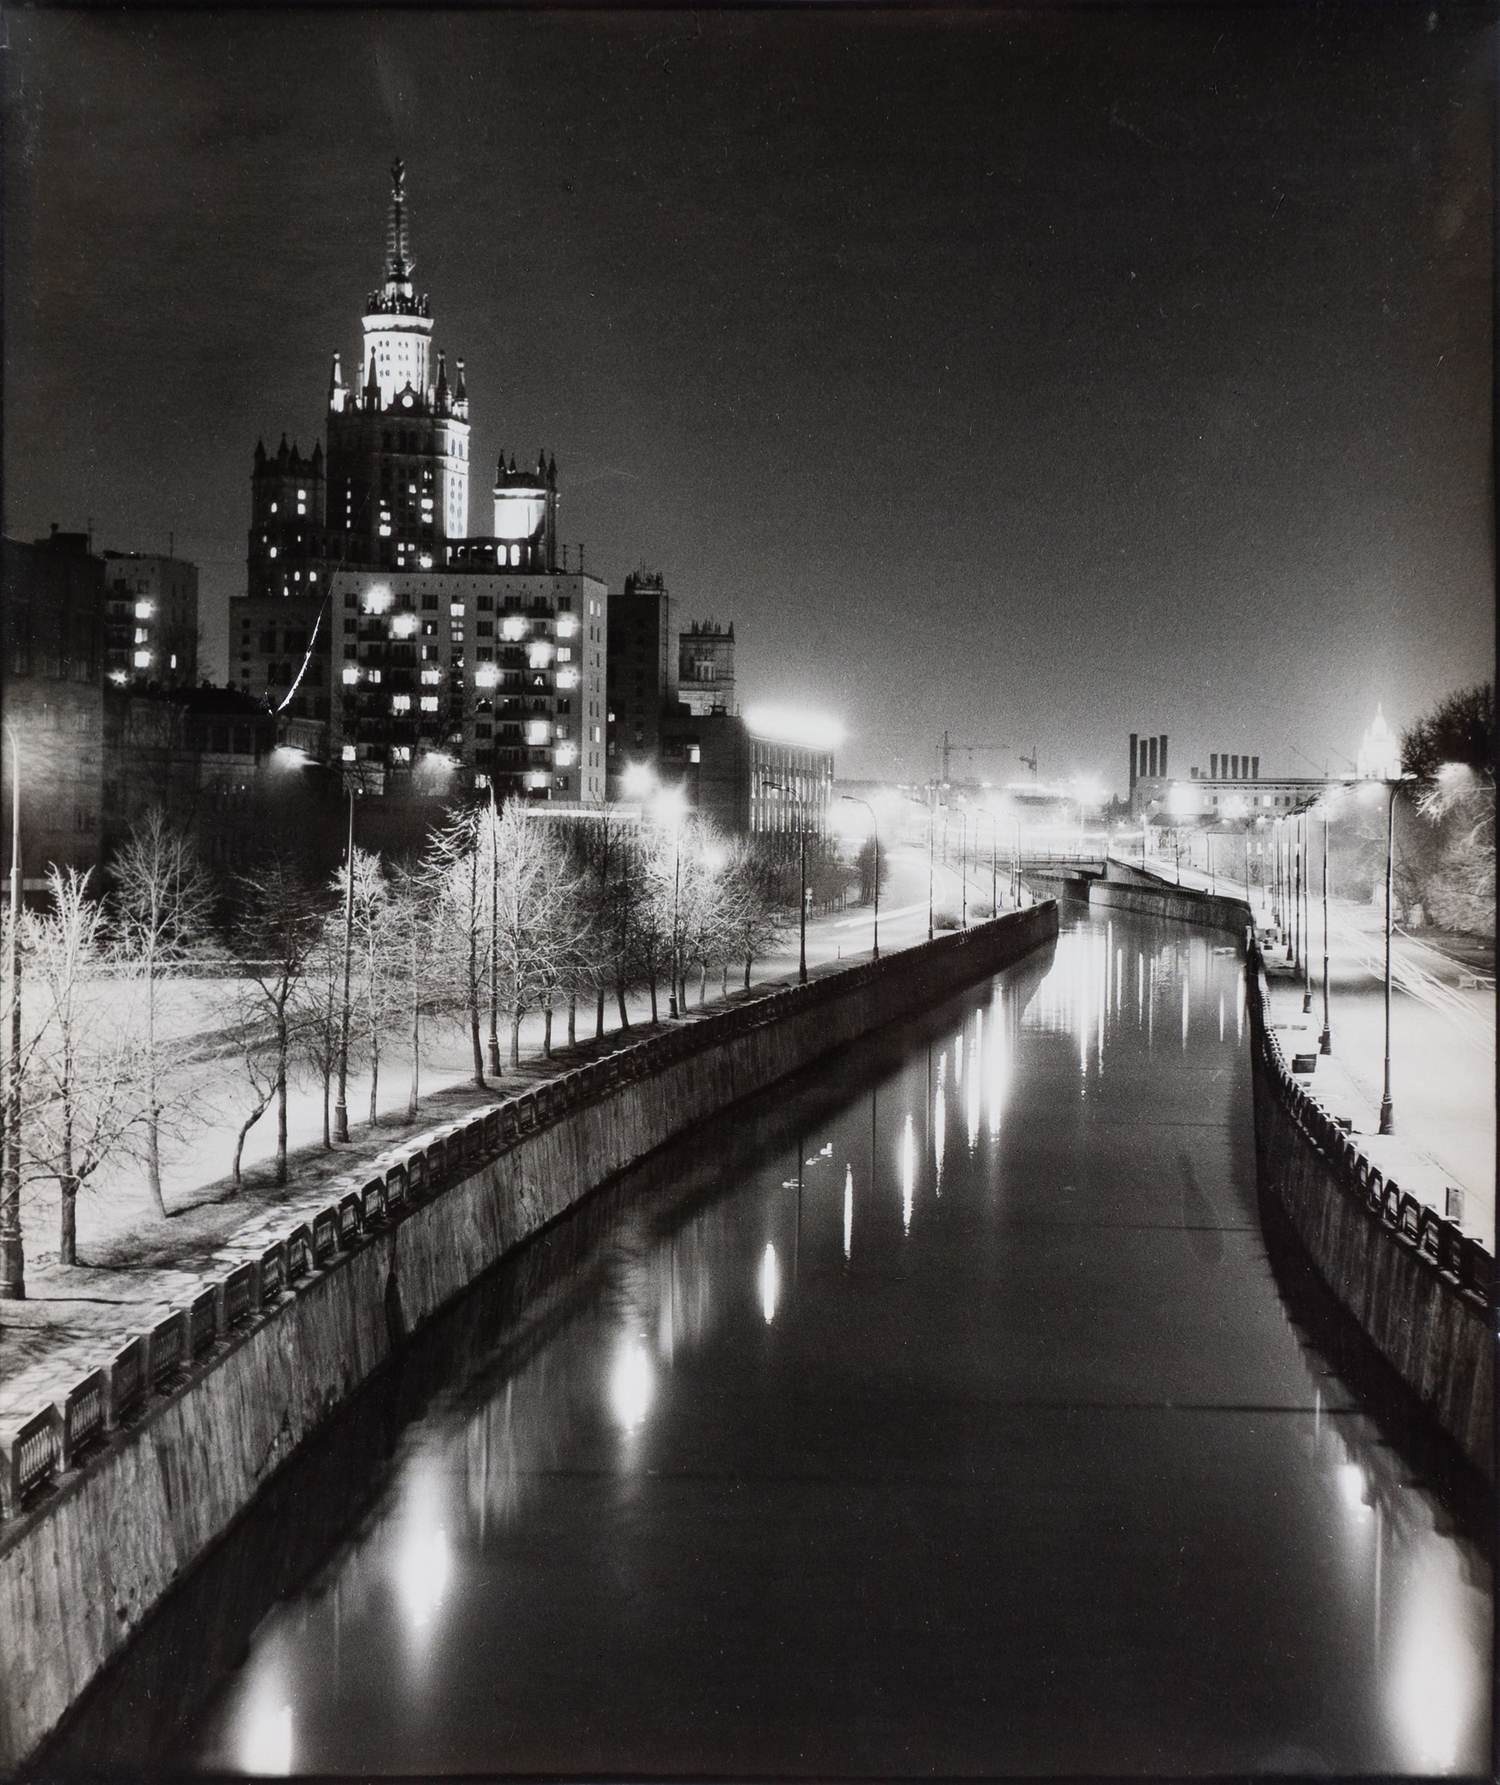 Локтионов Ю.Ф. Фотография «Ночная Москва. Высотка на Котельнической набережной». 1986.